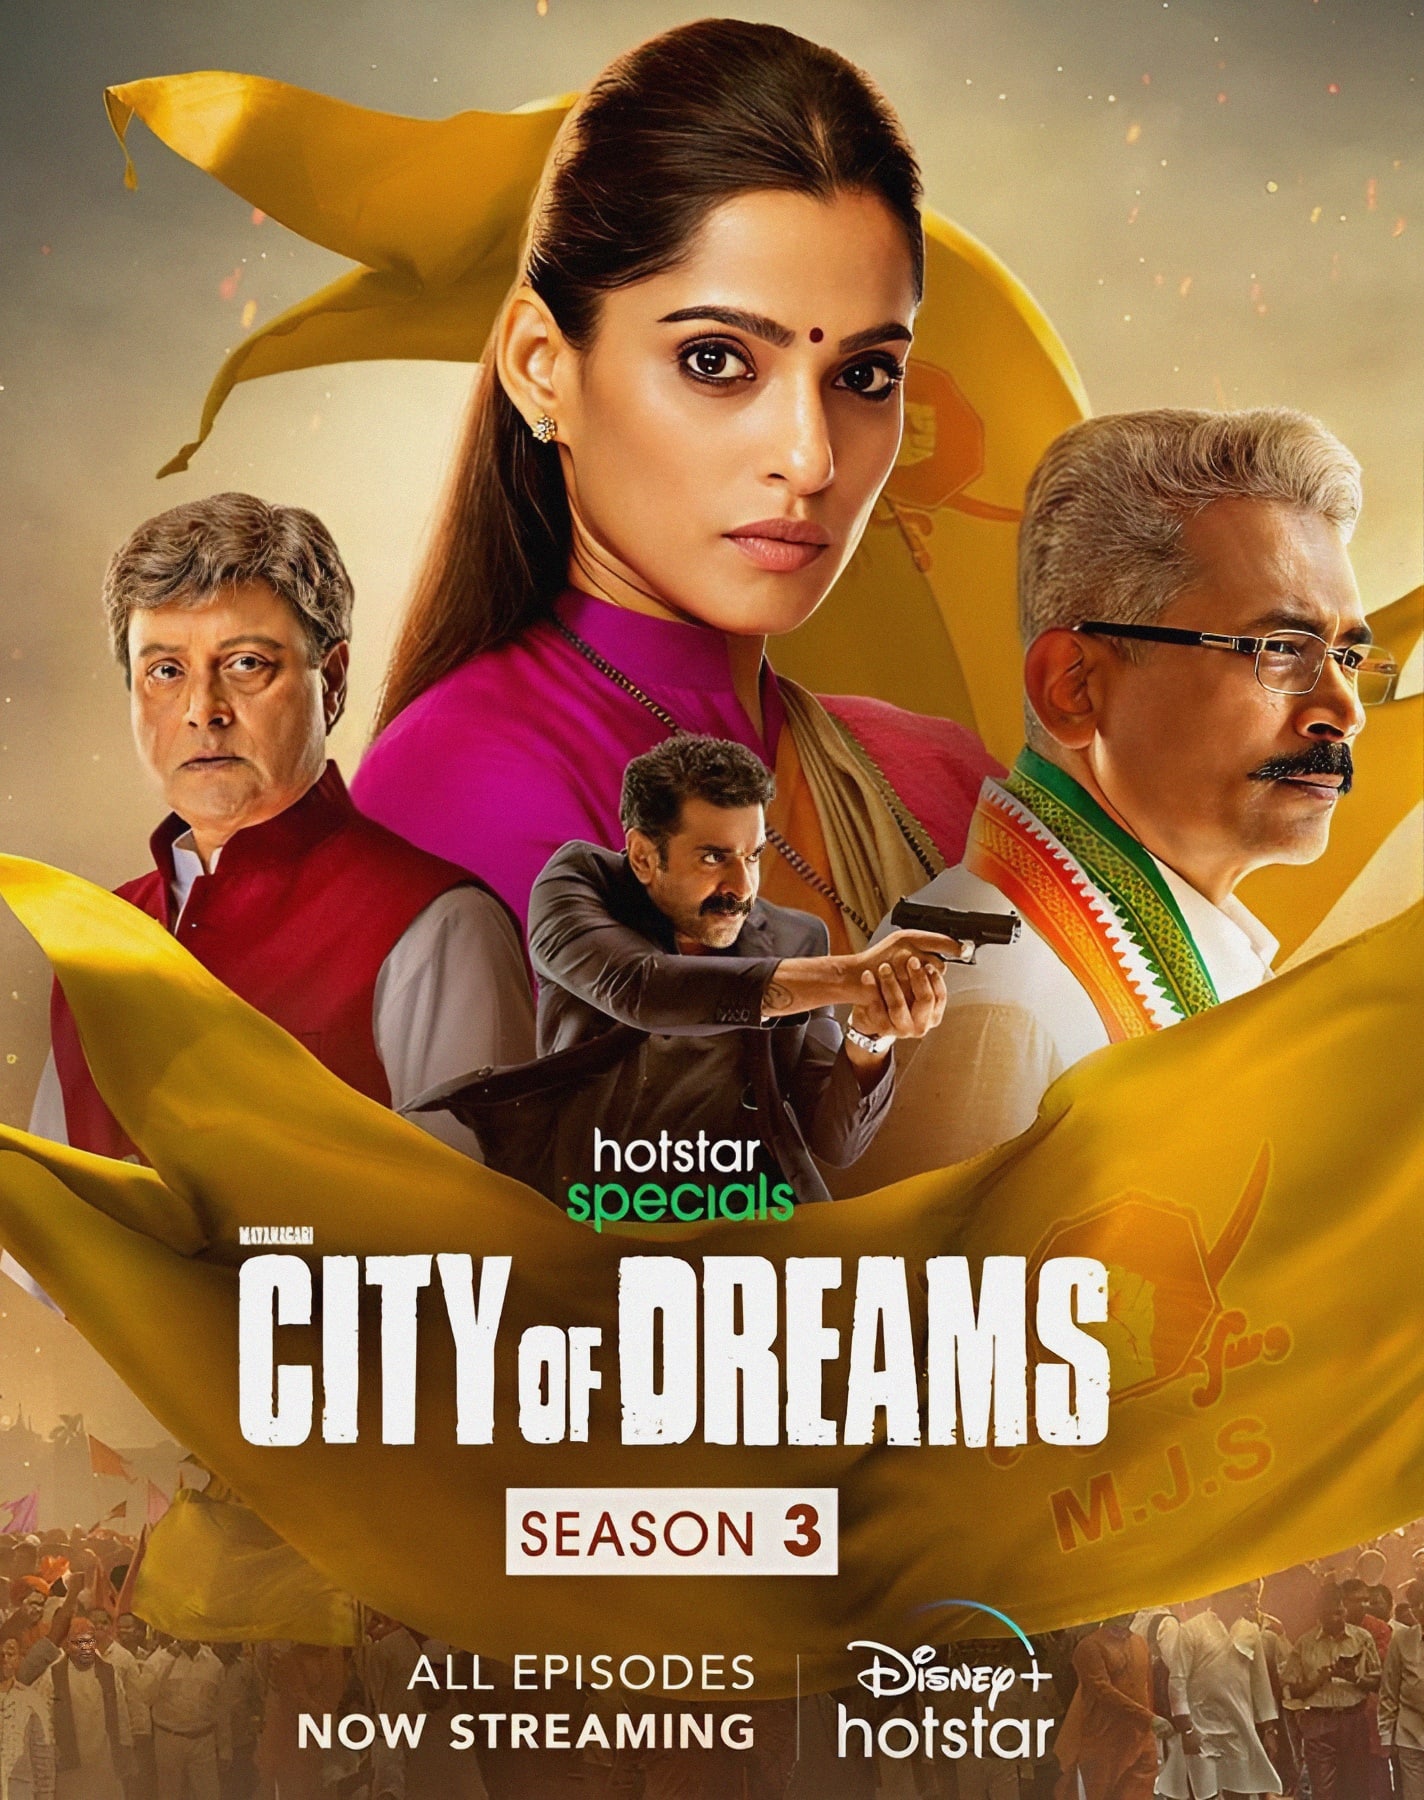 City of Dreams season 3